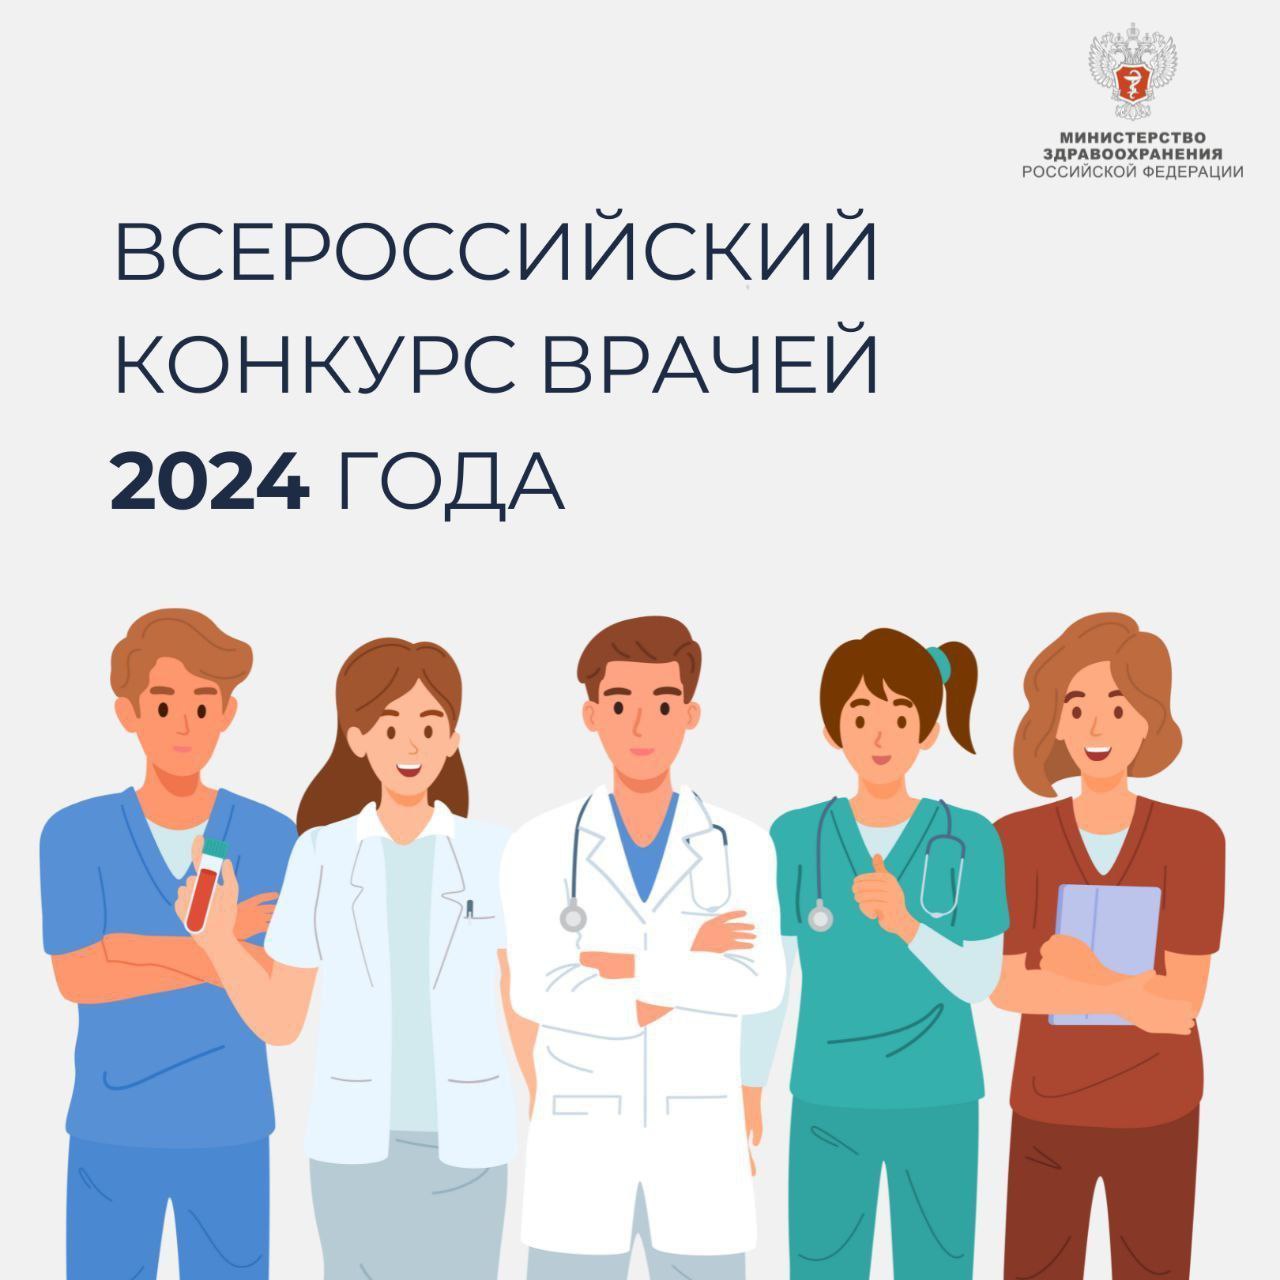 Меньше двух недель осталось до завершения первого этапа Всероссийского конкурса врачей 2024